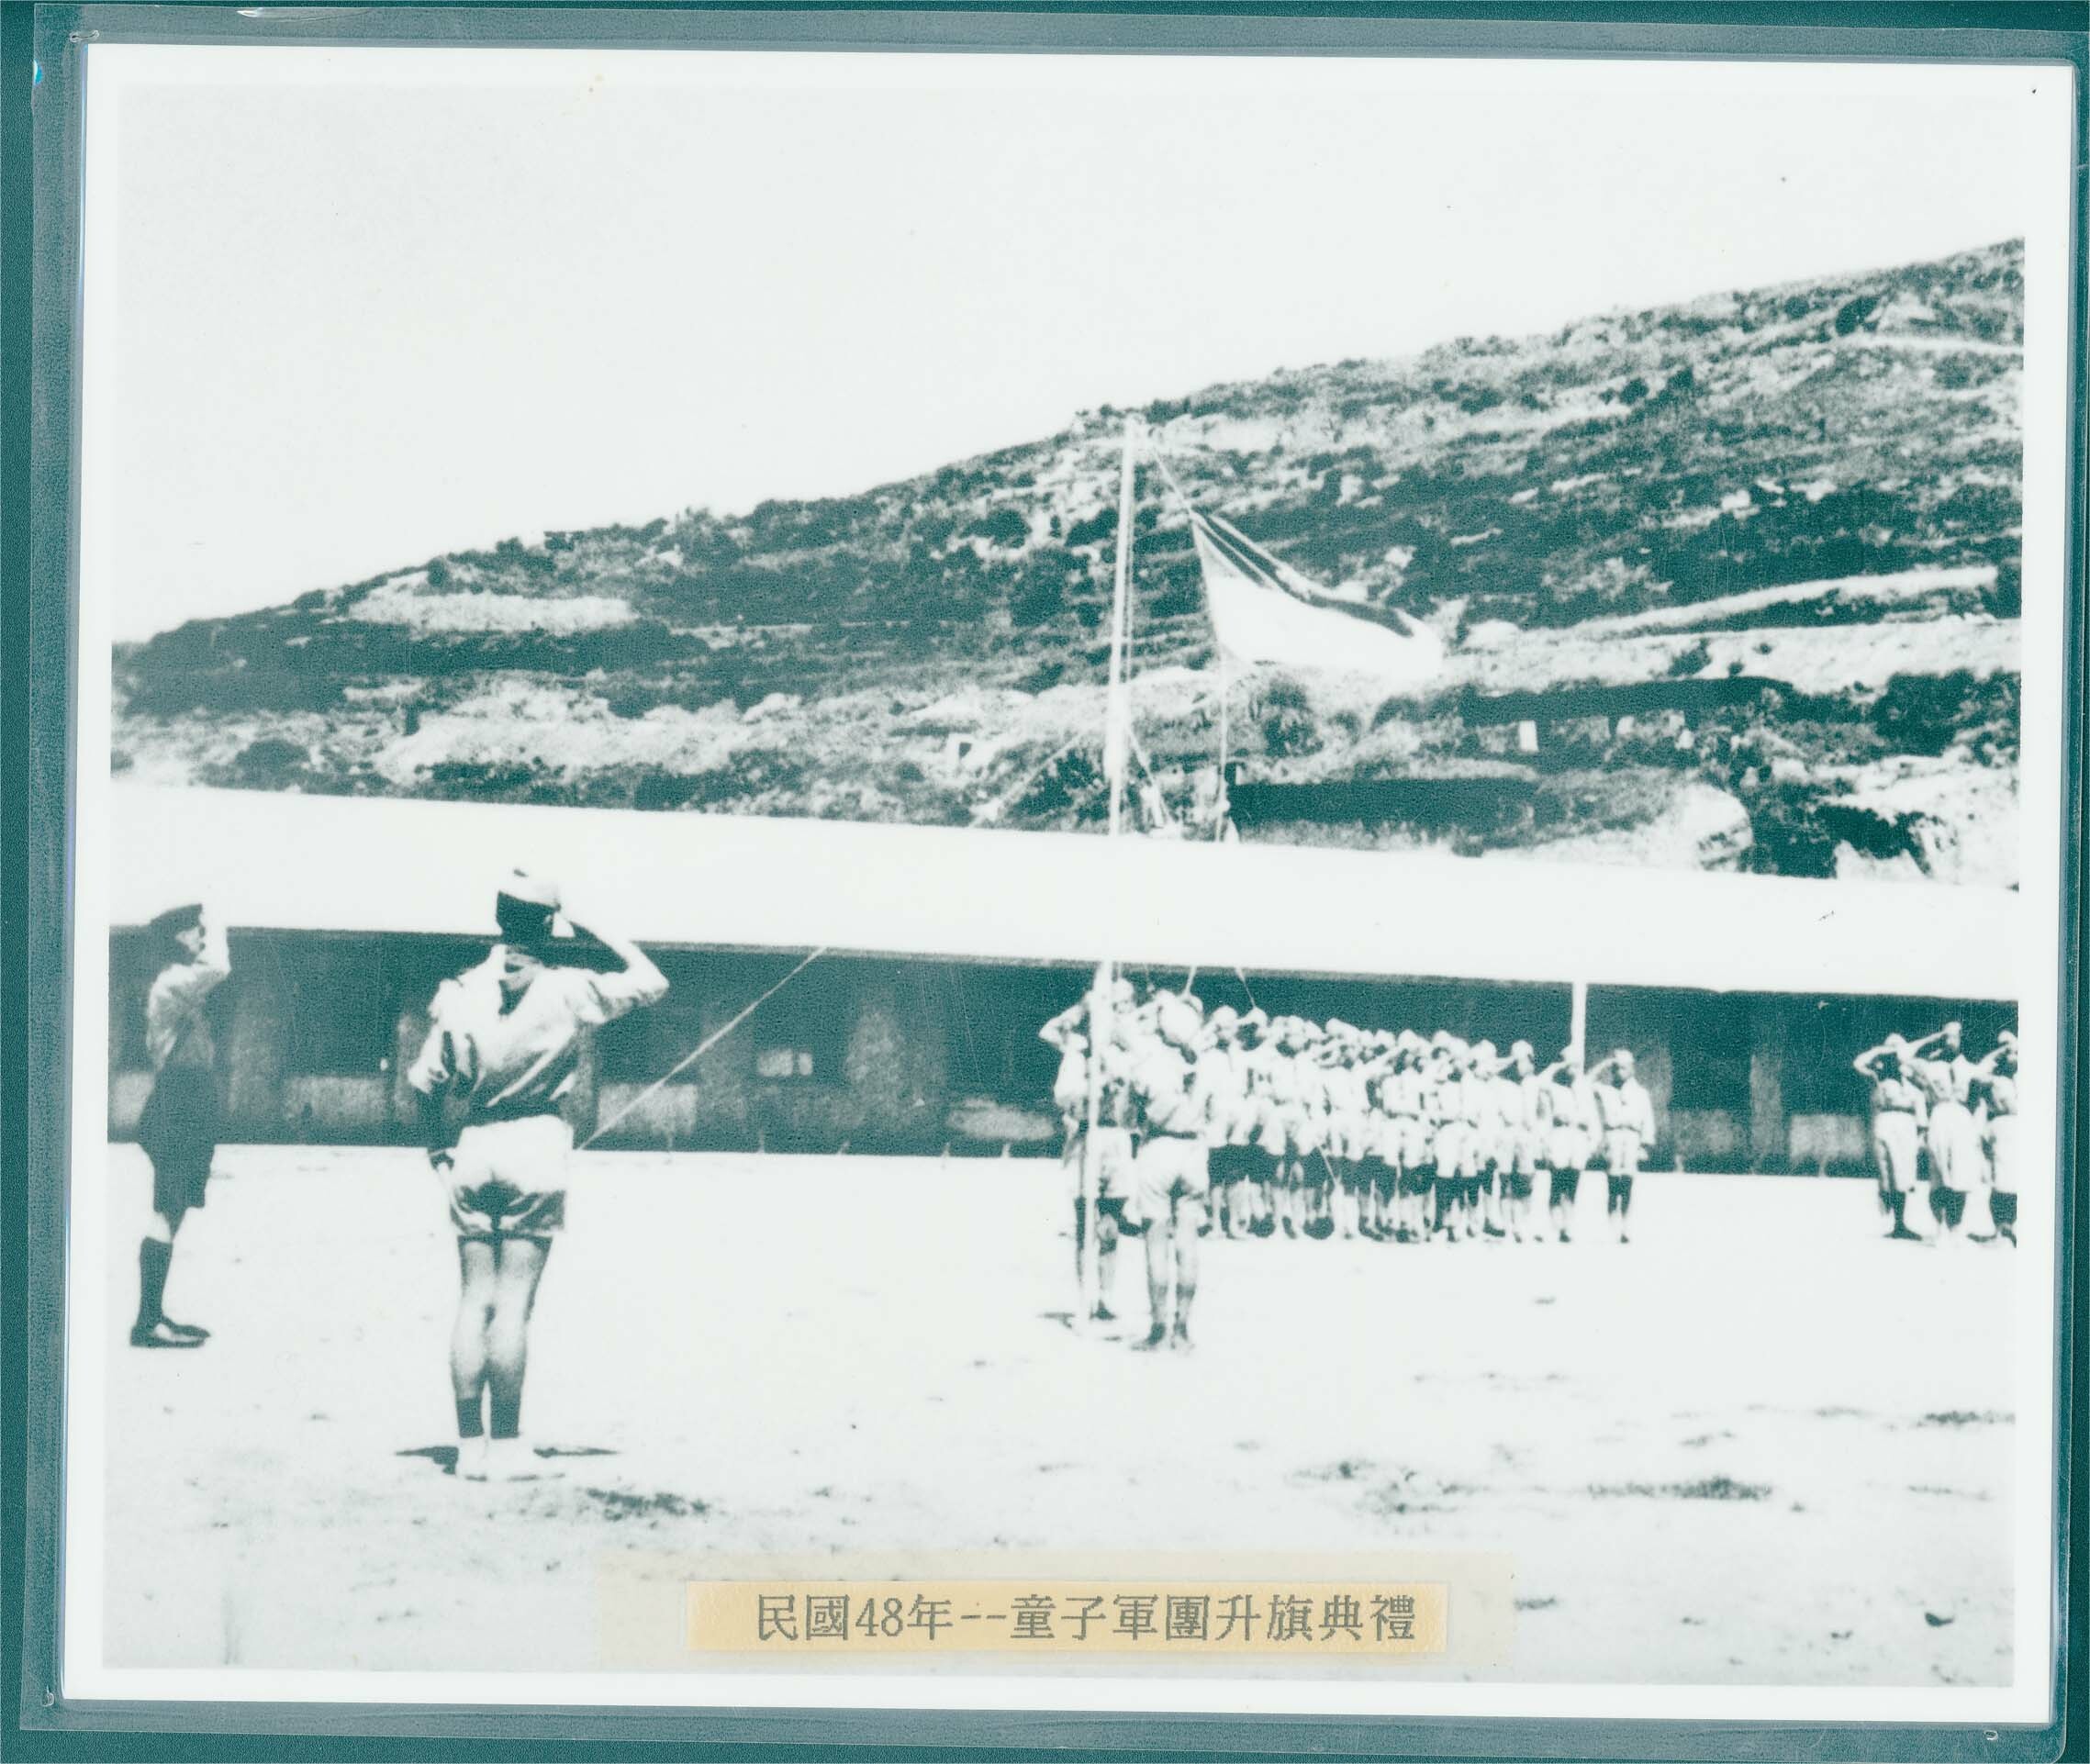 1959年馬祖初級中學童子軍團升旗典禮